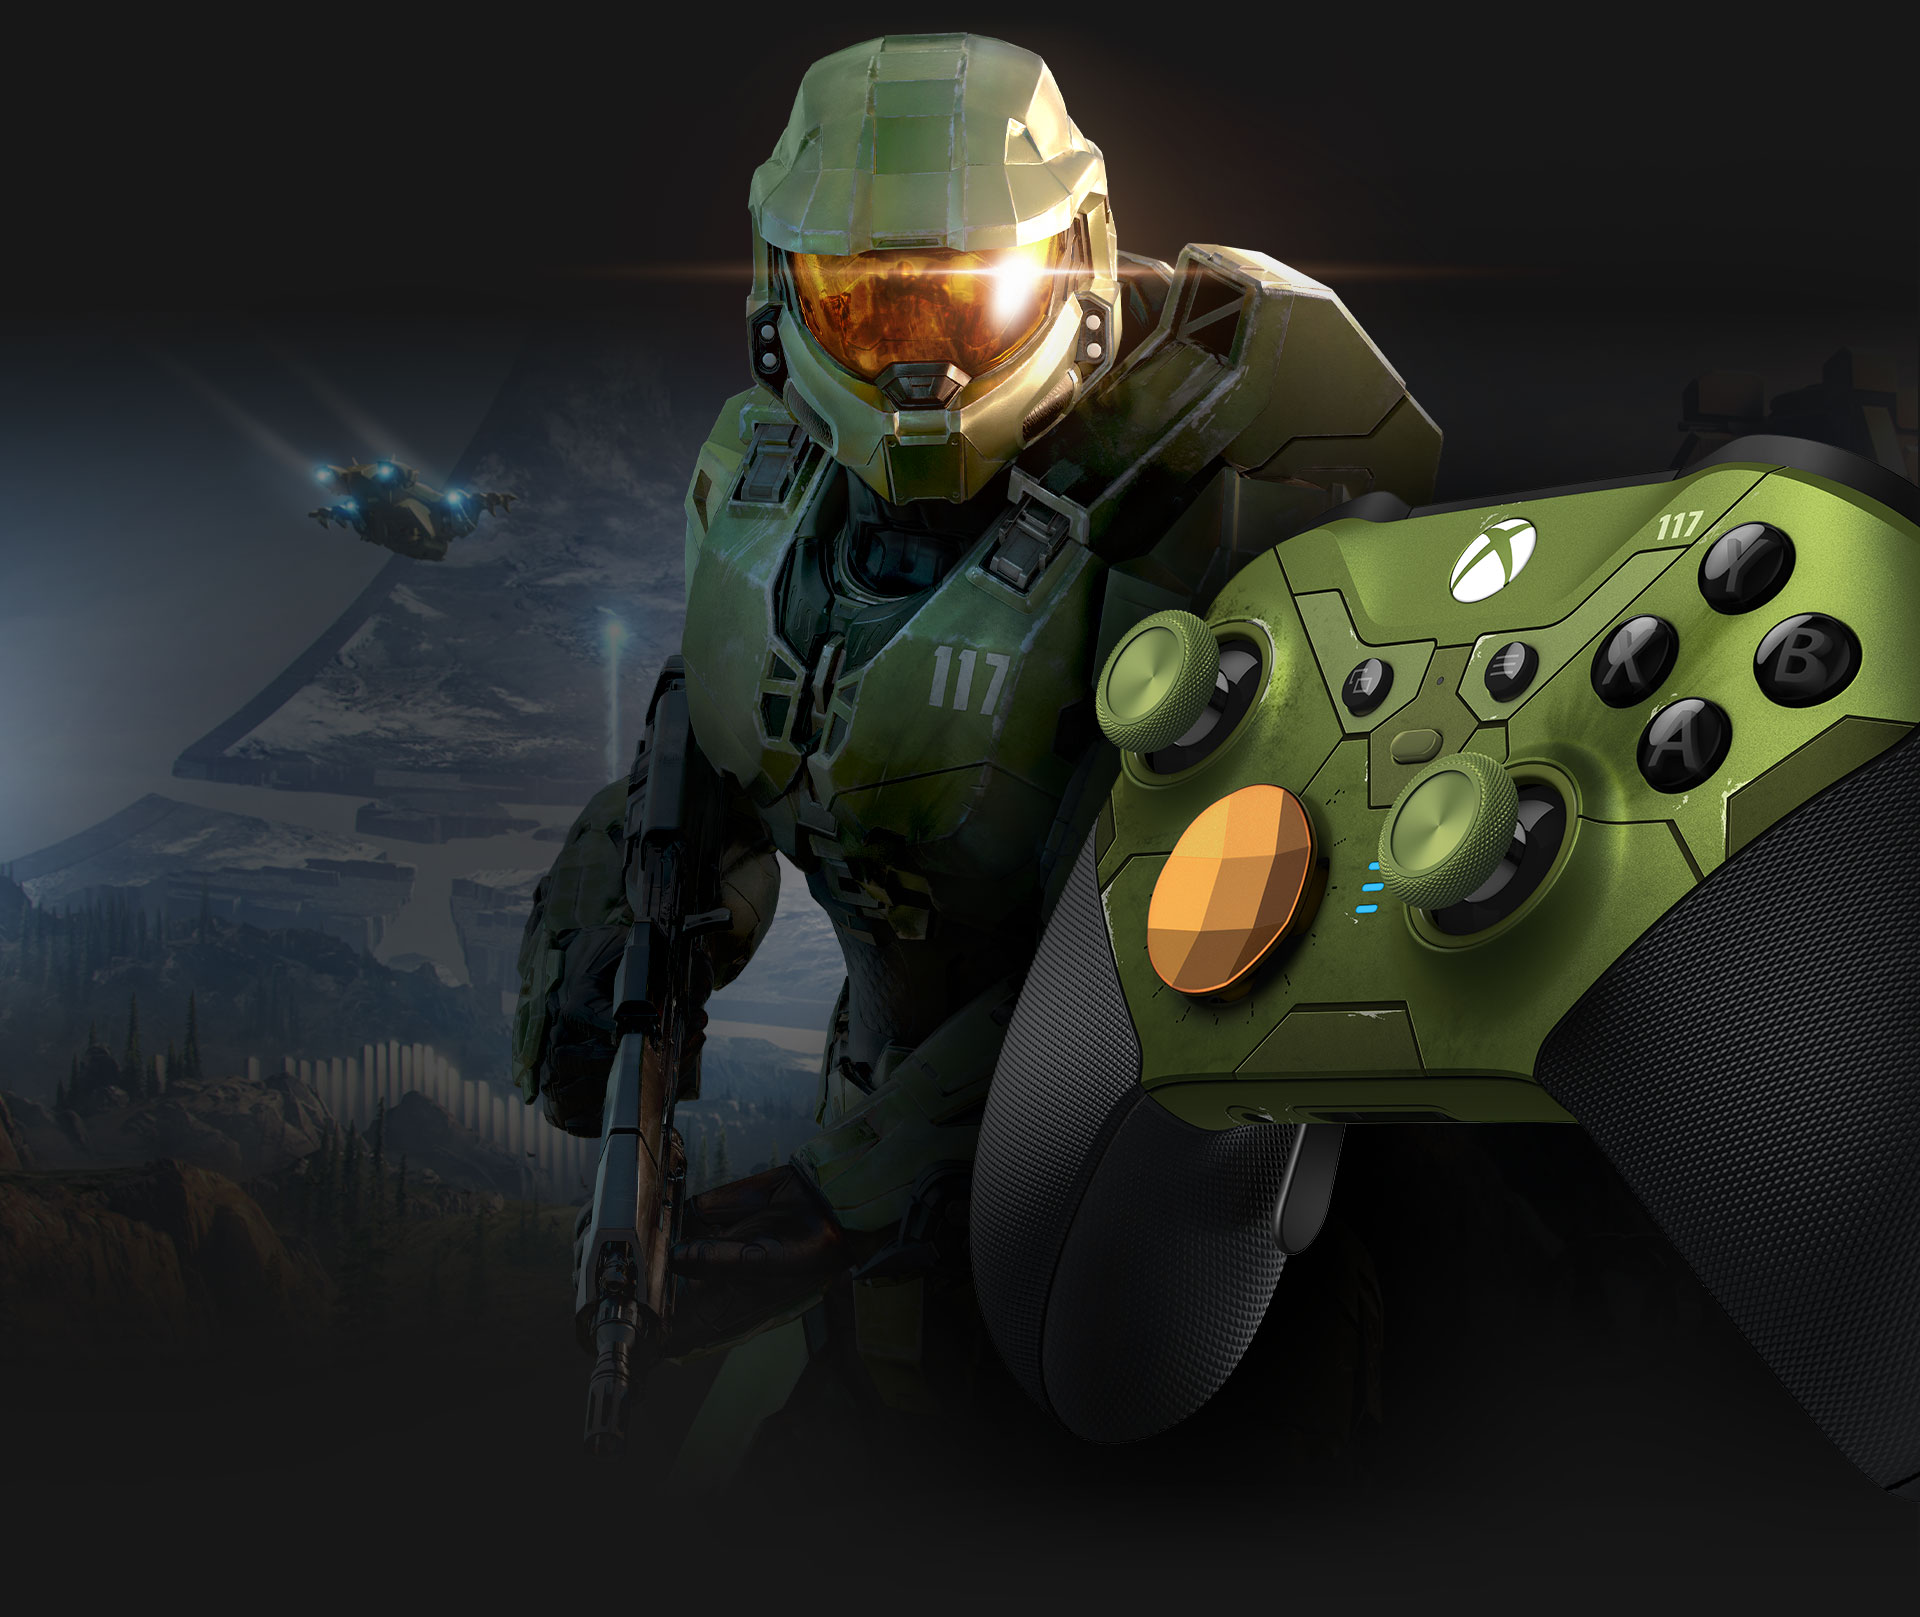 Venstre vinkel på Xbox Elite trådløs kontroller series 2 Halo Infinite med Master Chief